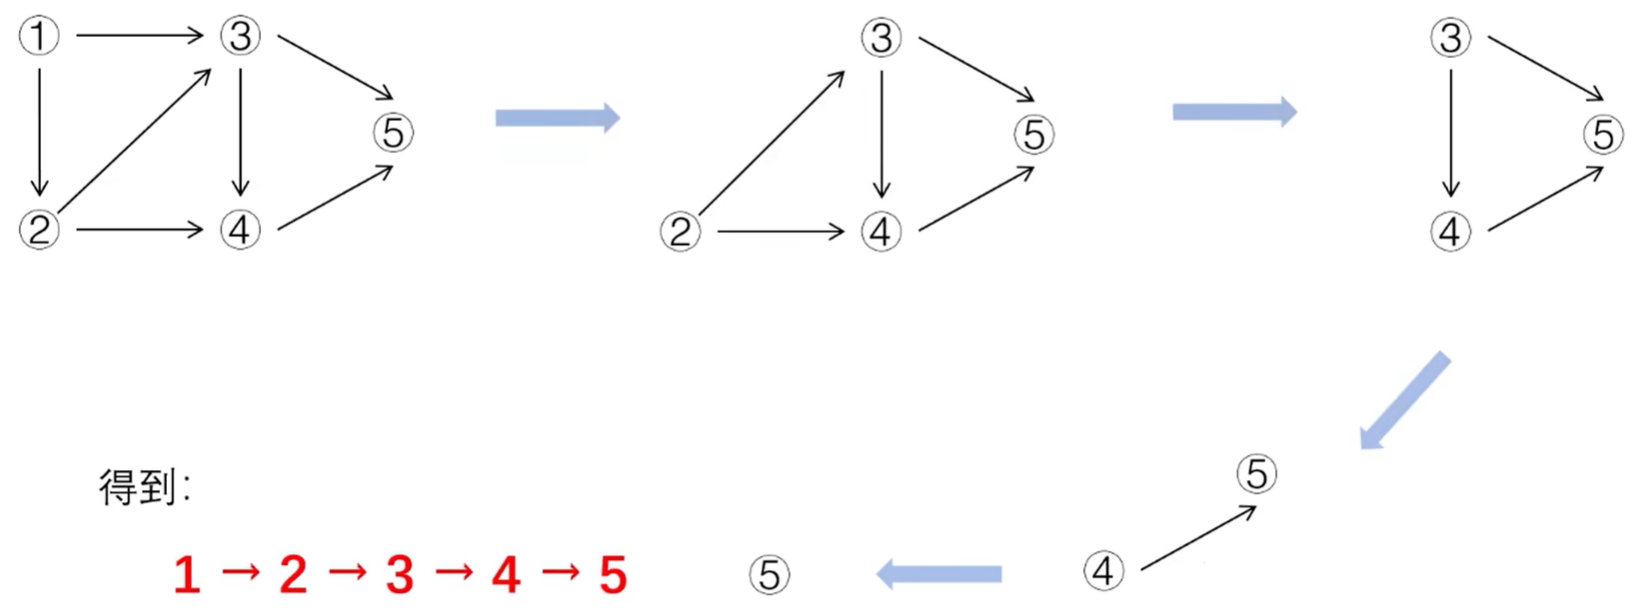 拓扑排序步骤图